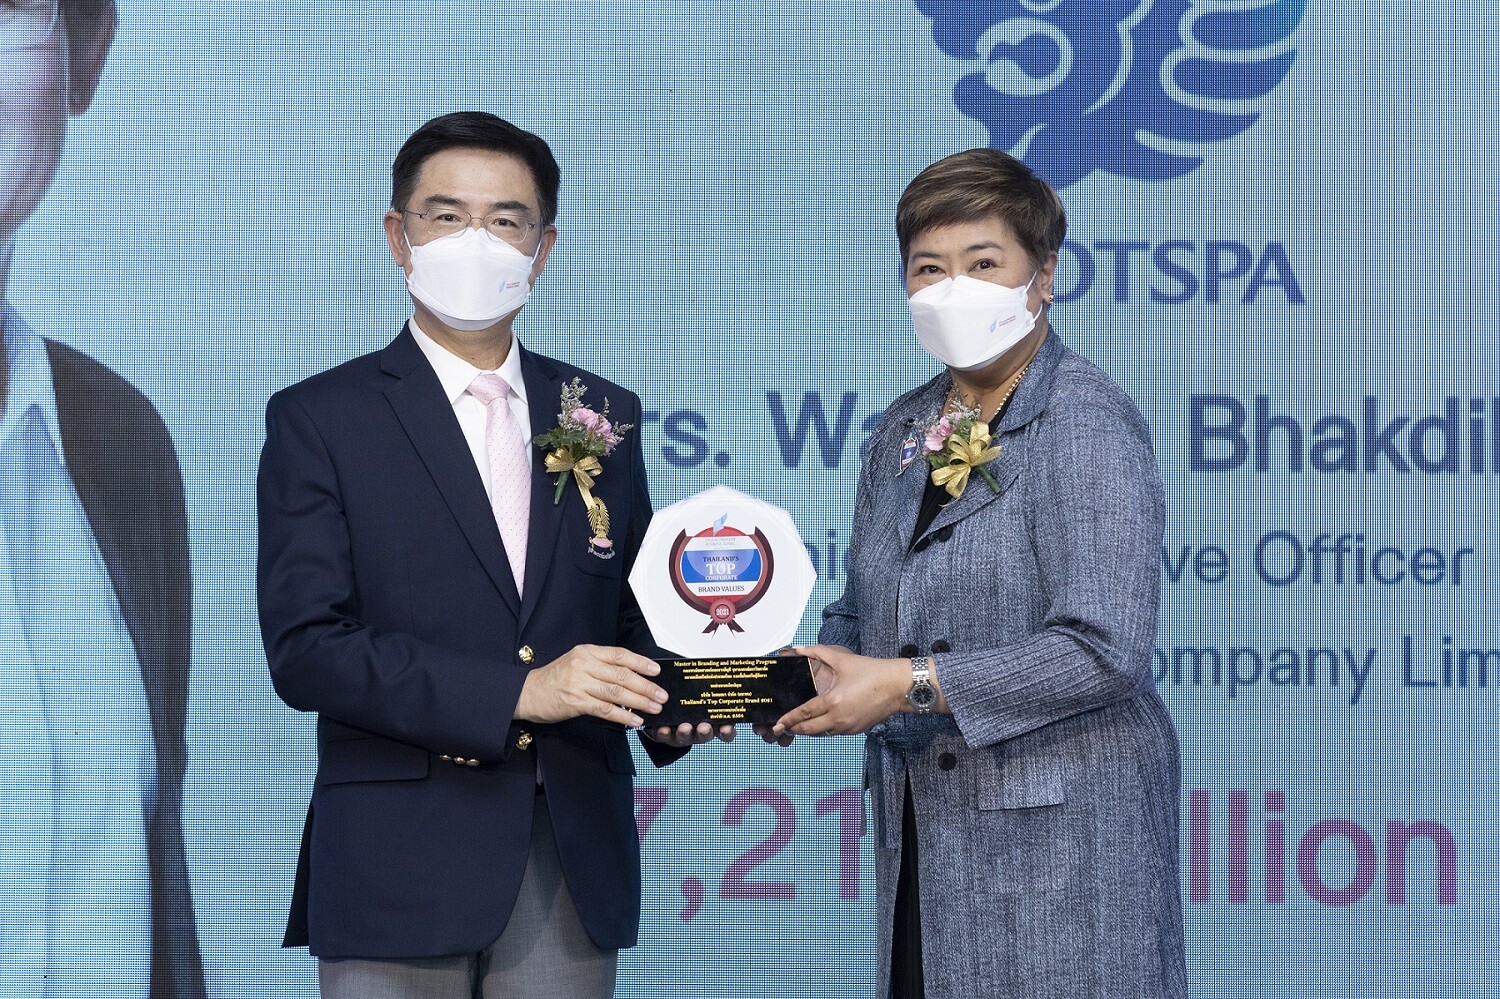 โอสถสภาคว้ารางวัล องค์กรที่มีมูลค่าแบรนด์องค์กรสูงสุดของประเทศไทย